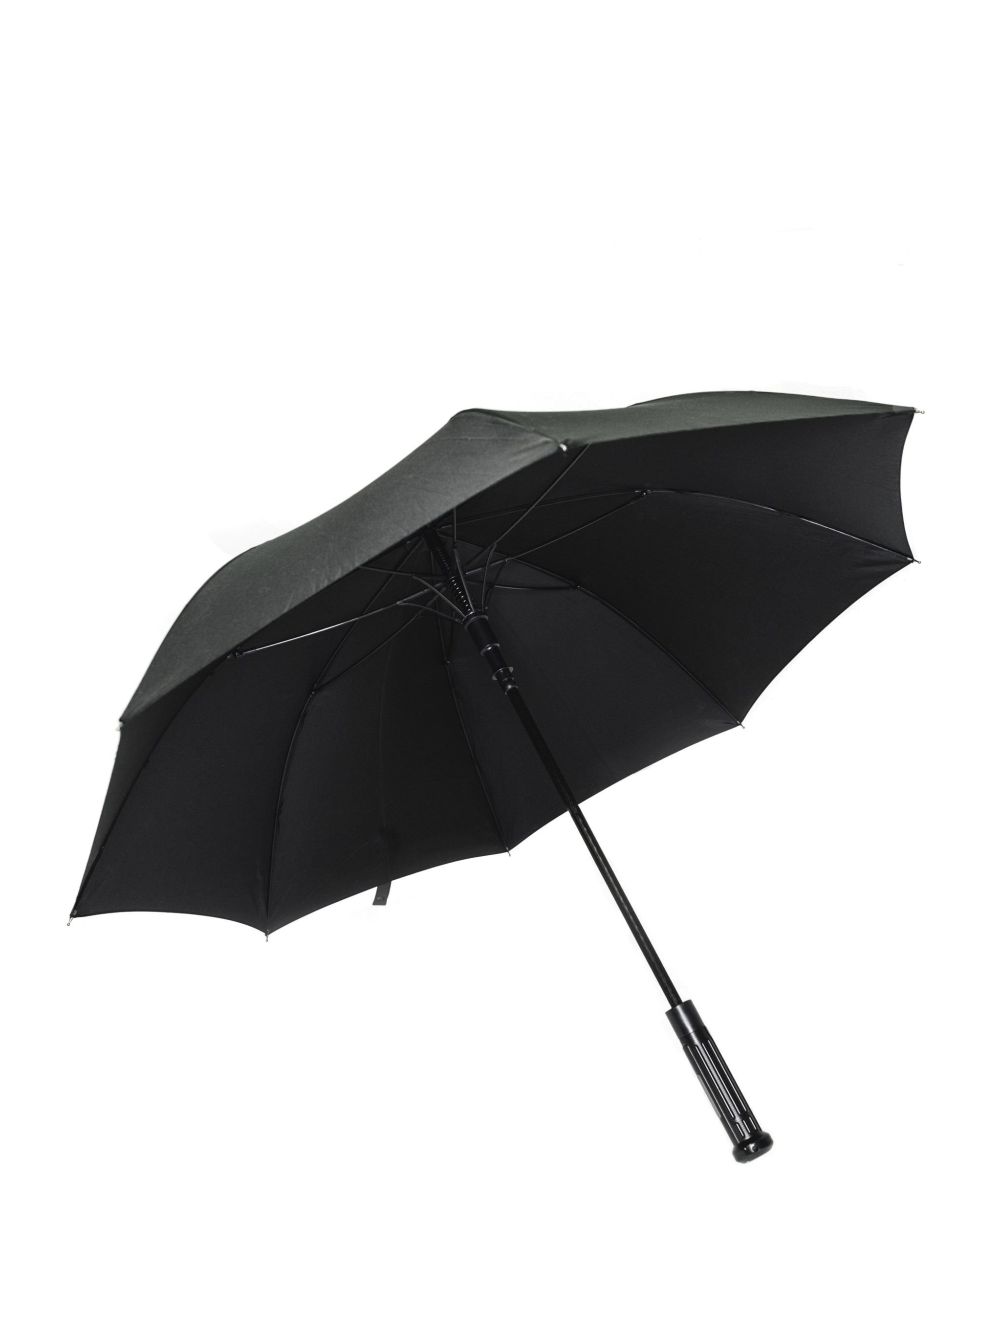 UZI Tactical Umbrella